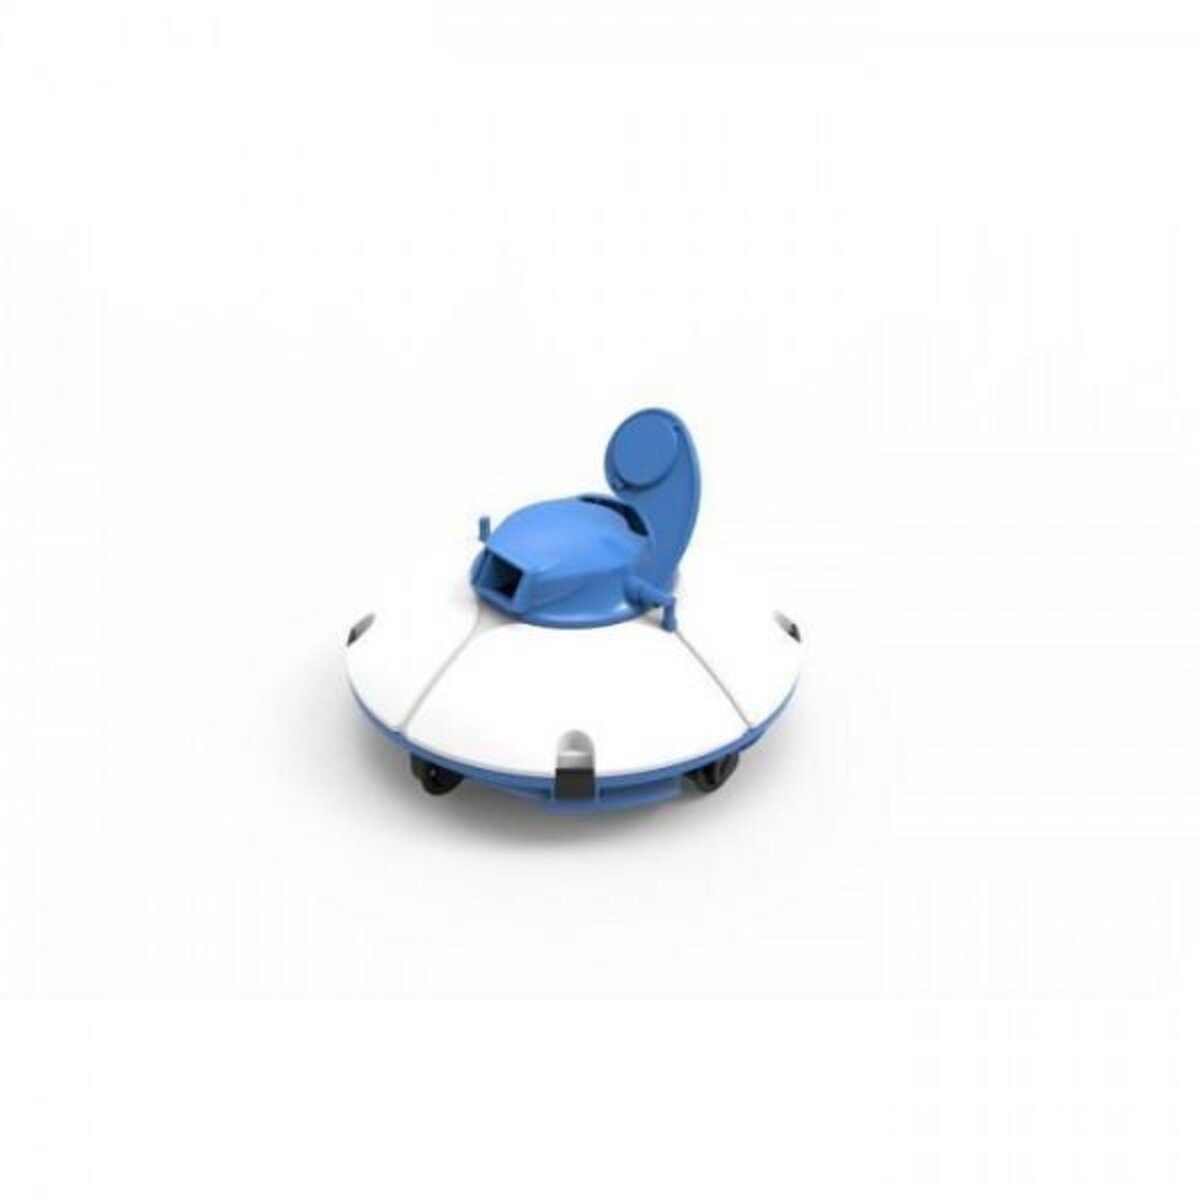 BESTWAY BESTWAY Robot aspirateur Frisbee - Pour piscine a fond plat - 5 x 3 m